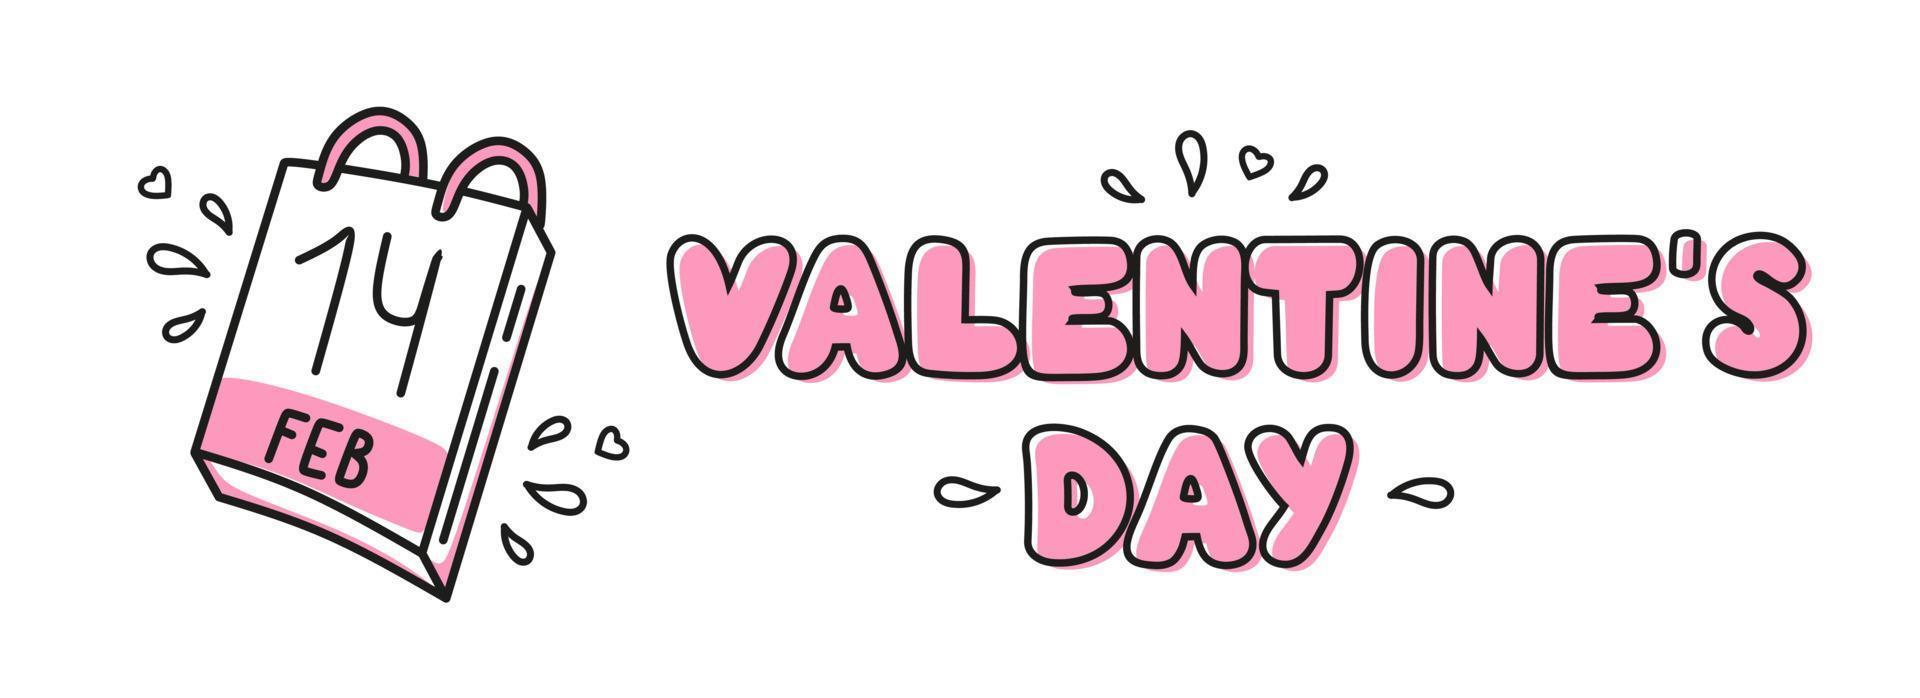 kalligraphische Inschrift Happy Valentines Day mit Kalender, hervorgehoben auf weißem Hintergrund. Verwendung am Valentinstag auf Textilien, Geschenkpapier, Hintergründen, Souvenirs. Vektor-Illustration vektor